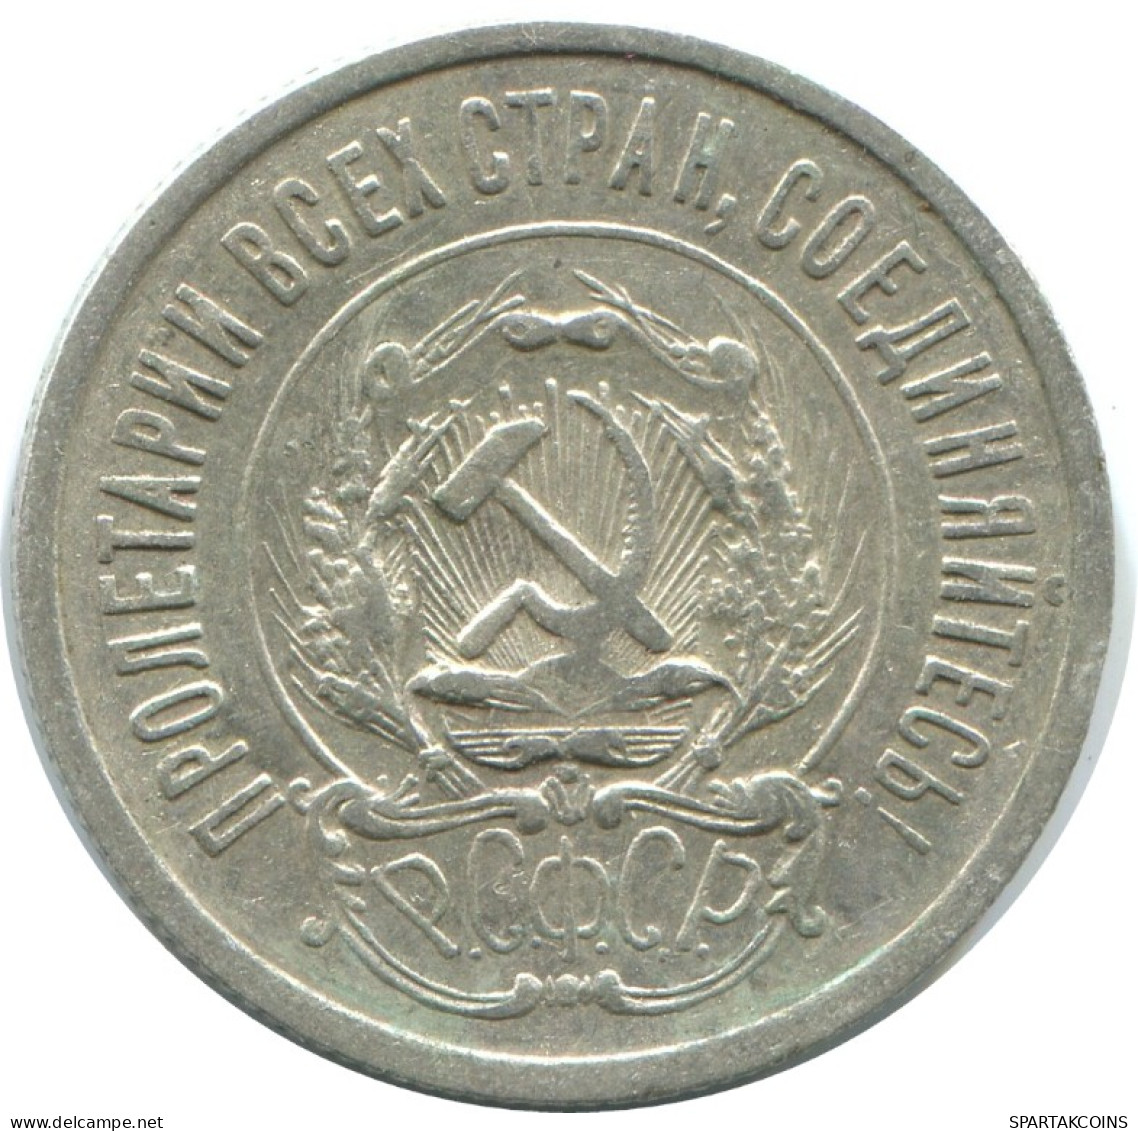 20 KOPEKS 1923 RUSIA RUSSIA RSFSR PLATA Moneda HIGH GRADE #AF511.4.E.A - Russland